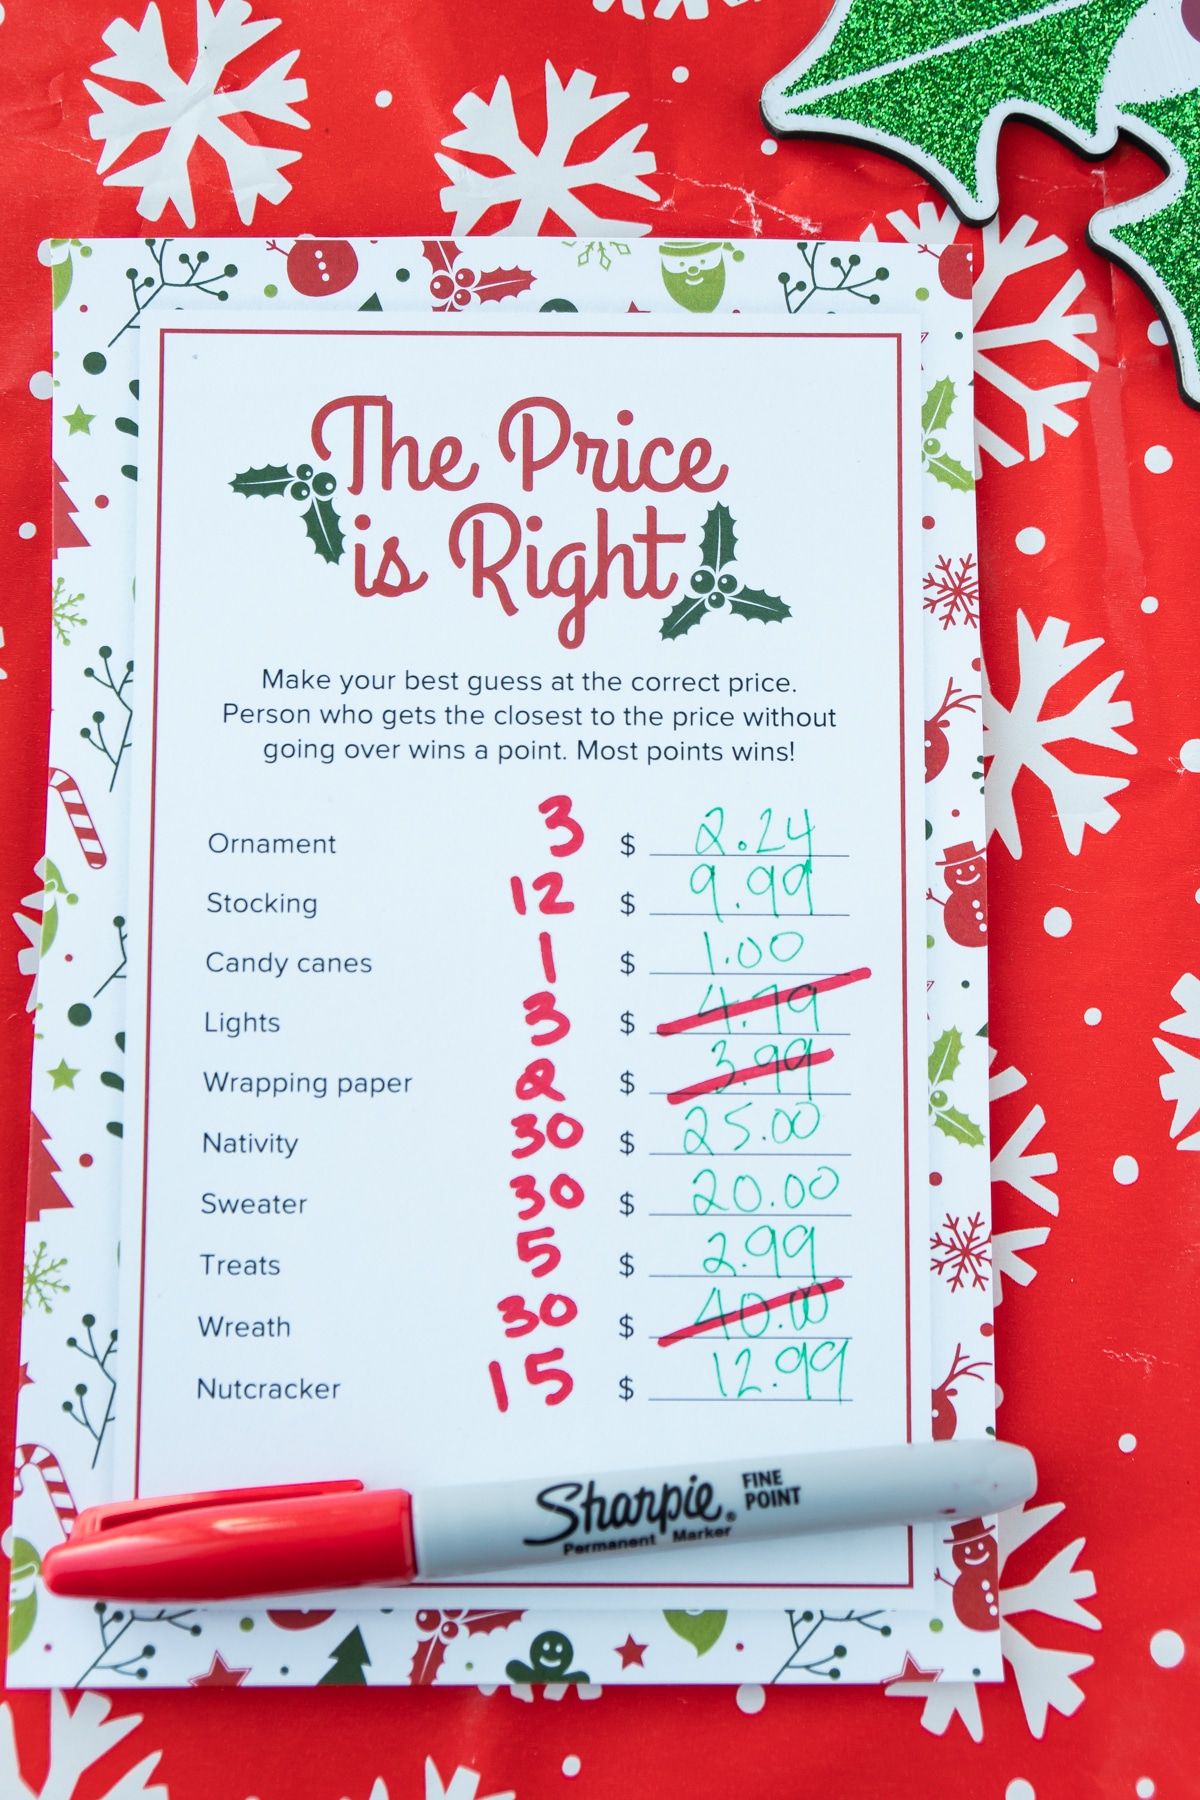 El precio de Navidad es el juego correcto con las respuestas escritas en